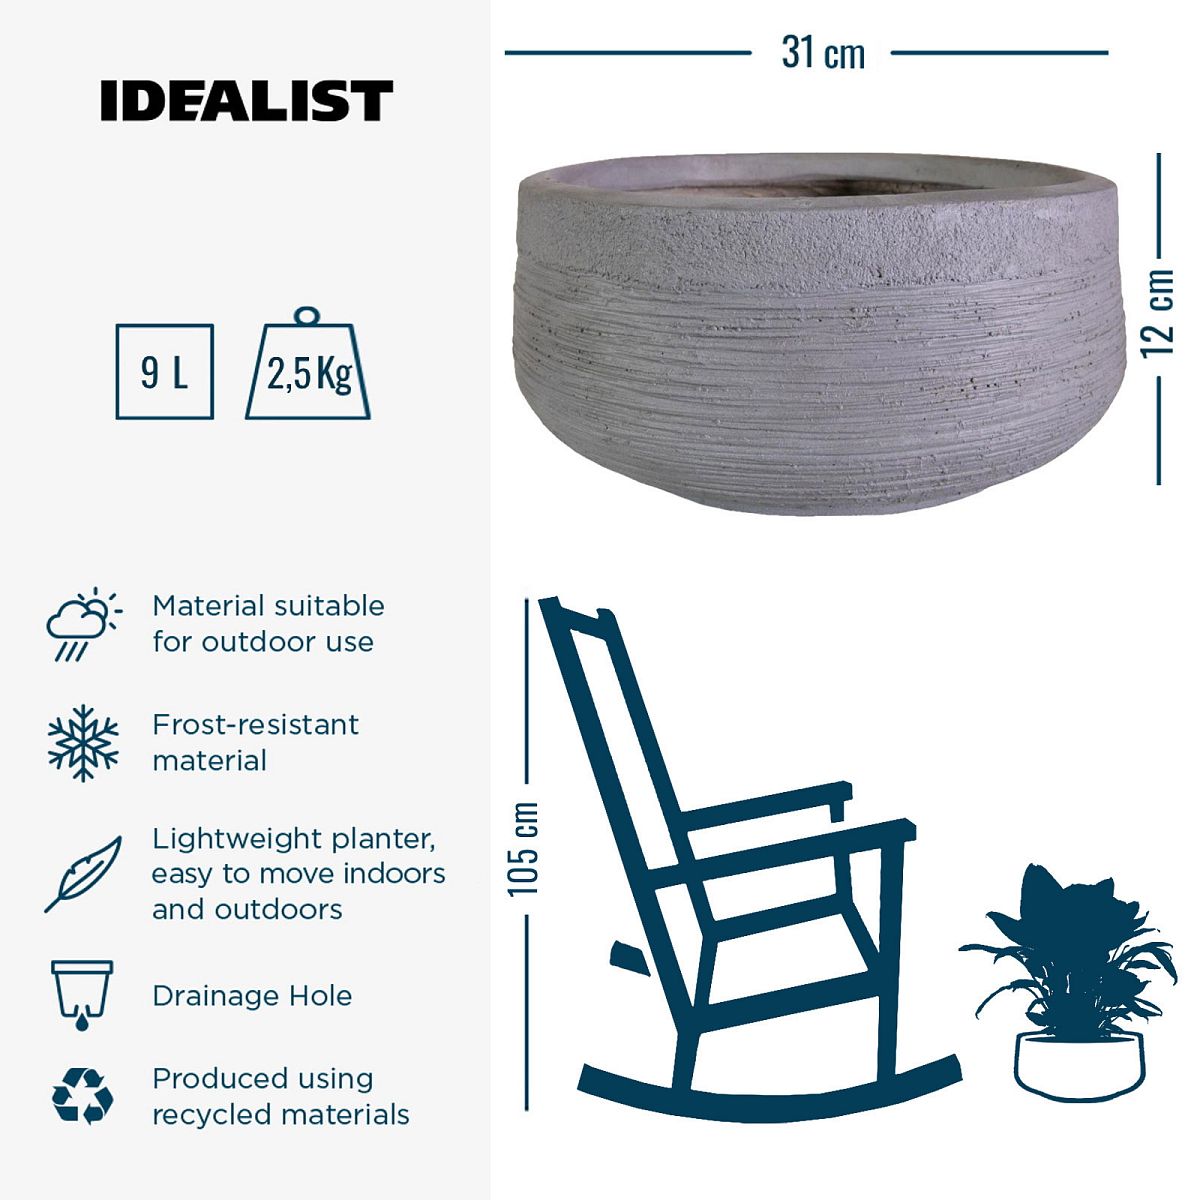 IDEALIST Lite Ribbed Light Concrete Bowl Planter